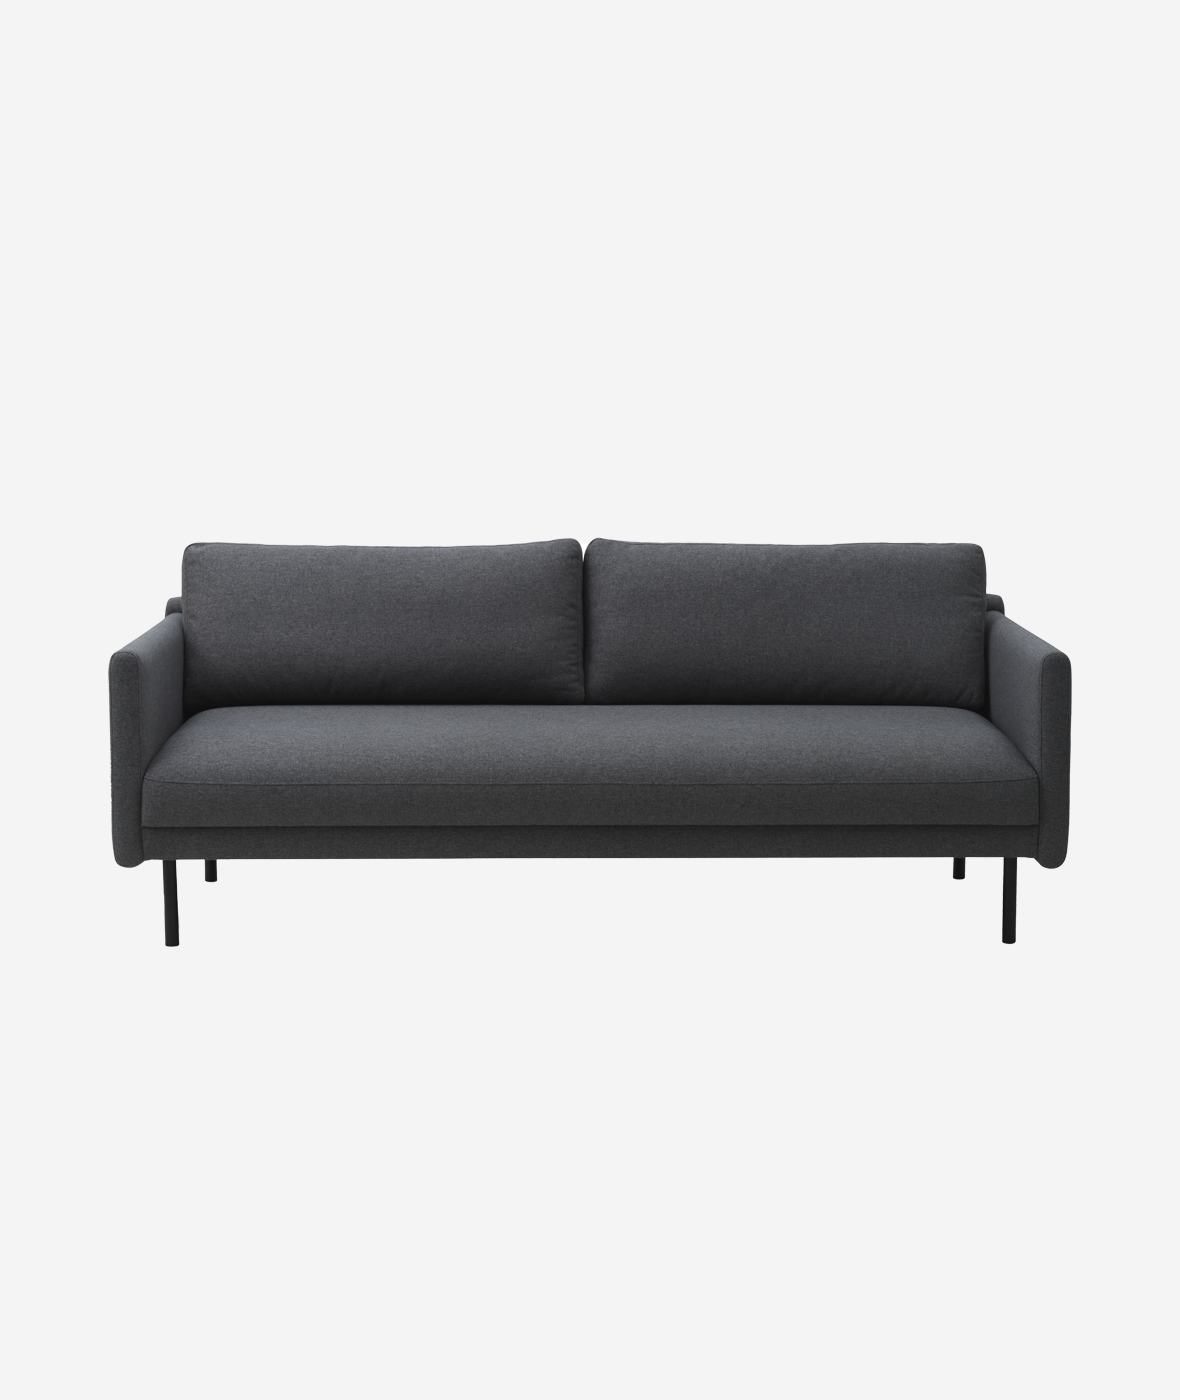 Rar Sofa - More Options